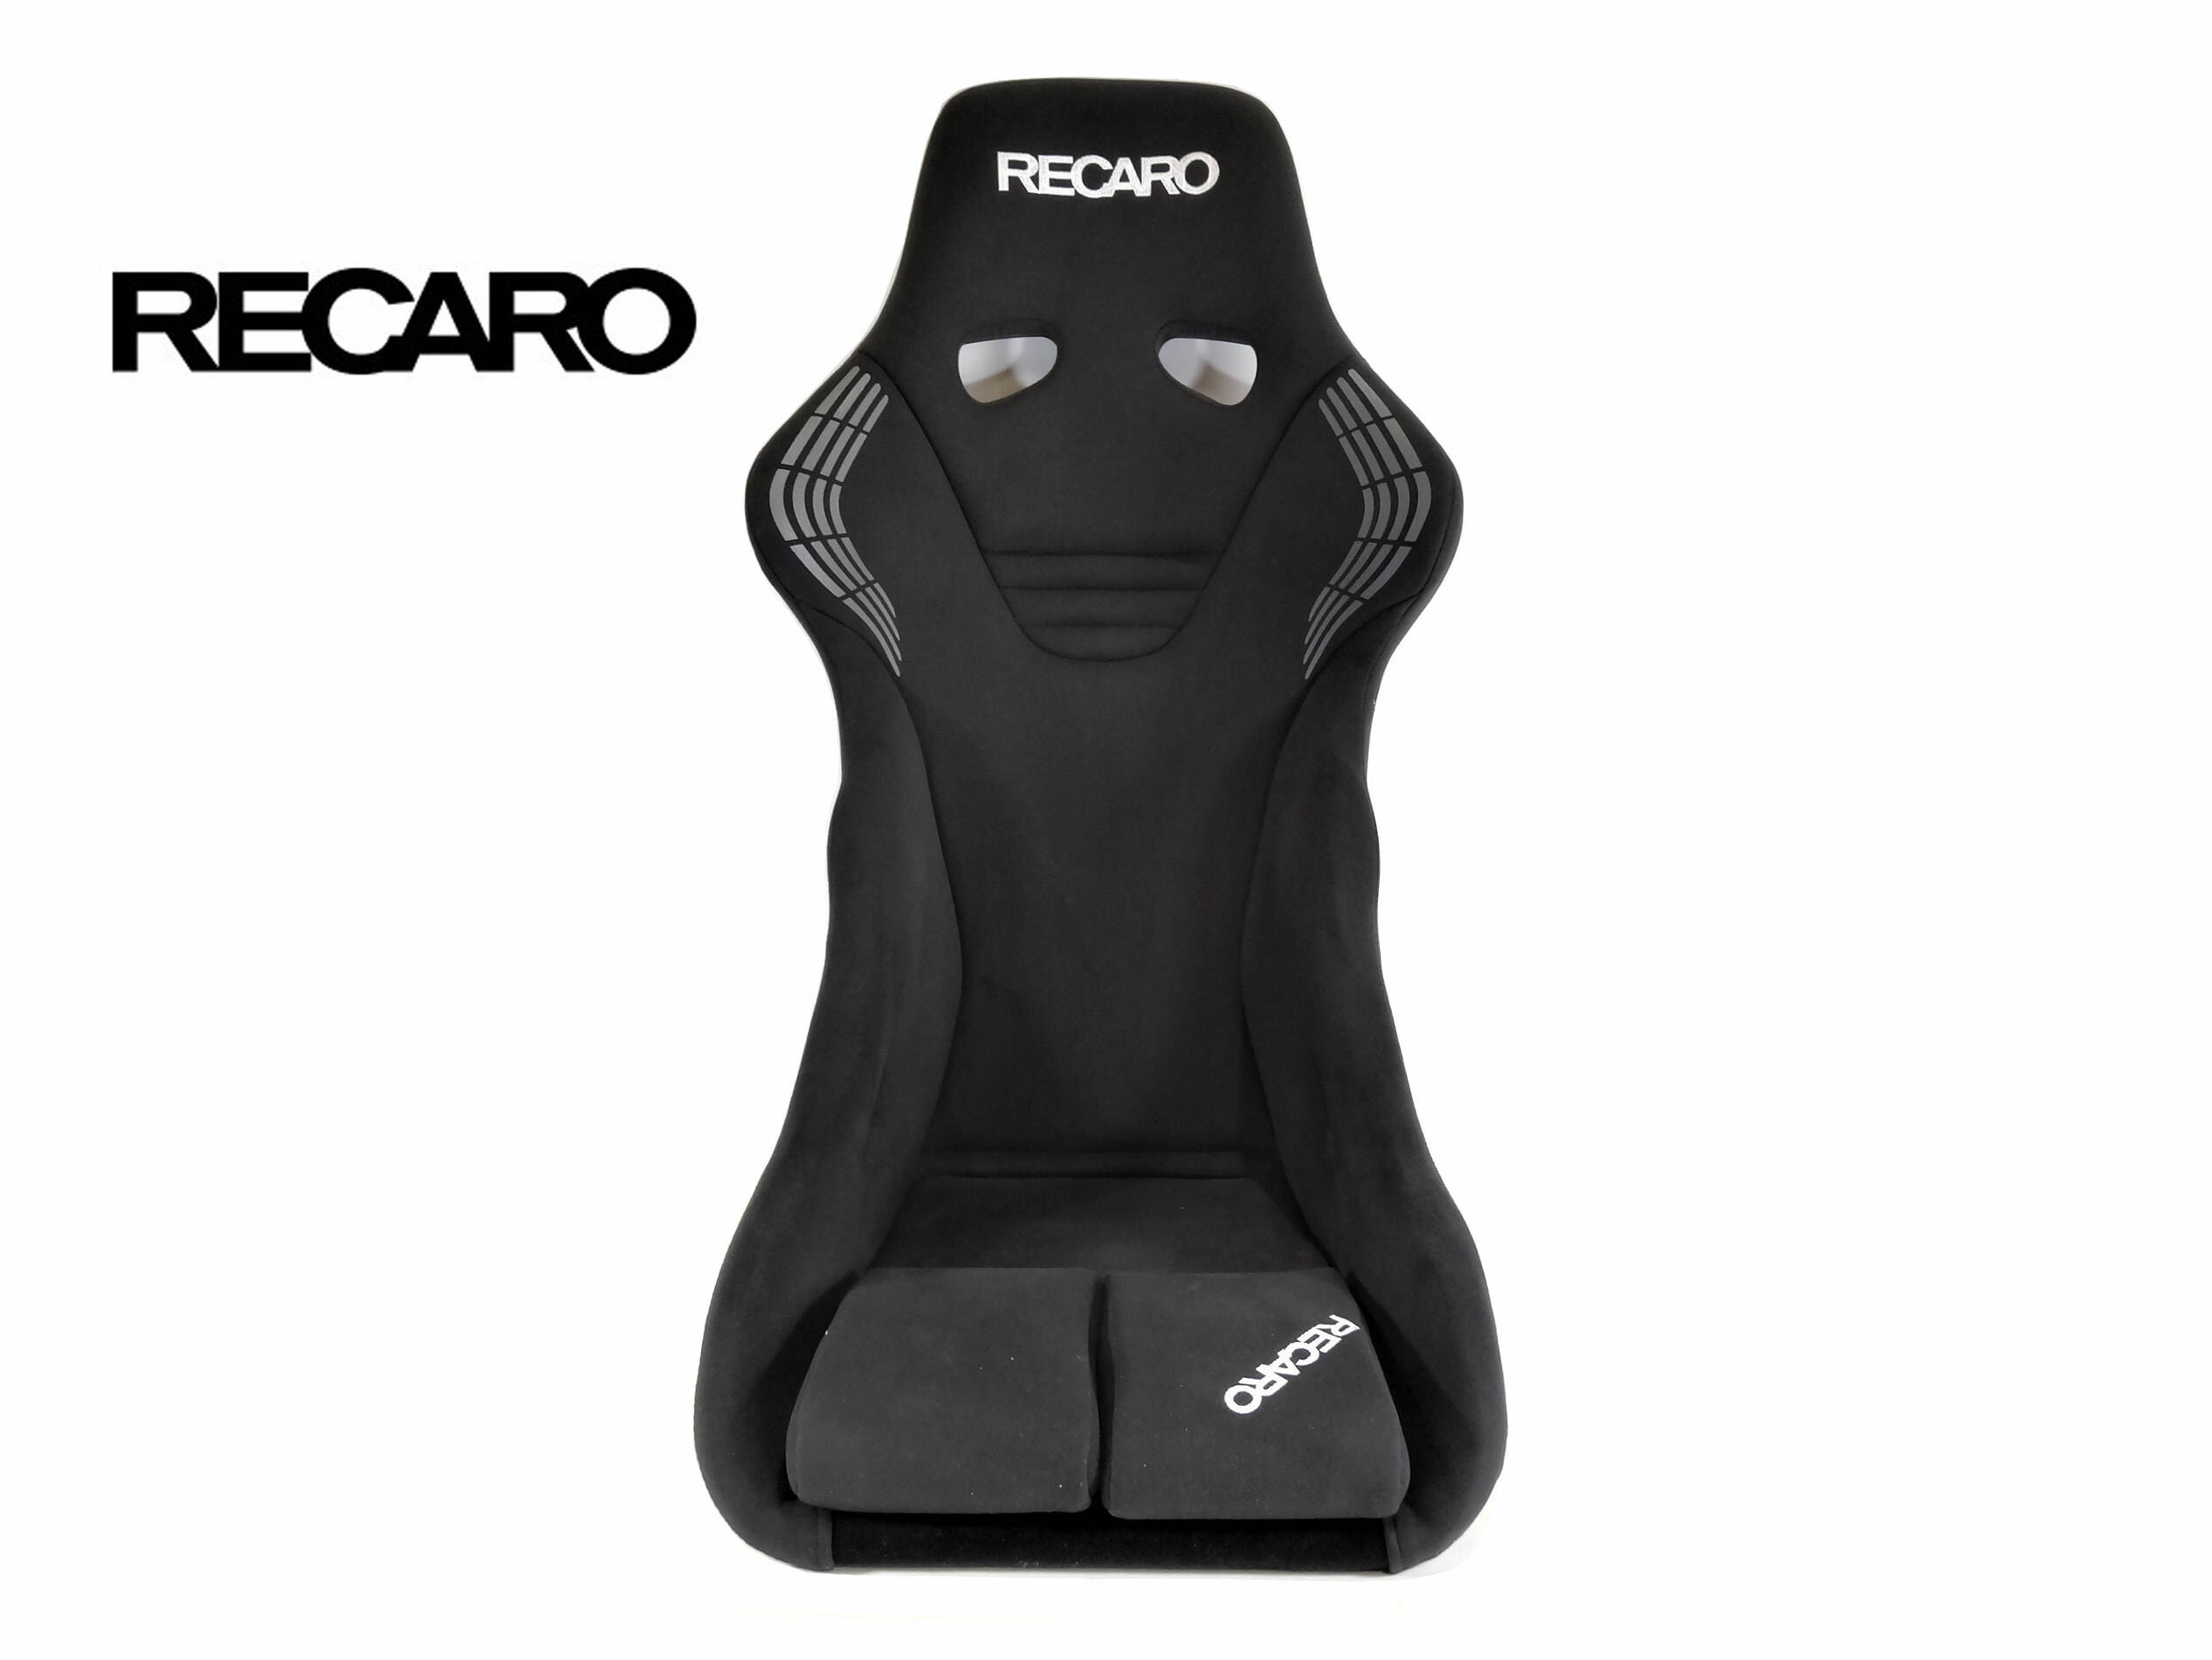 RECARO (レカロ) RS-GS カムイ ブラック FIA認証 + オリジナル シート ベルトガイド